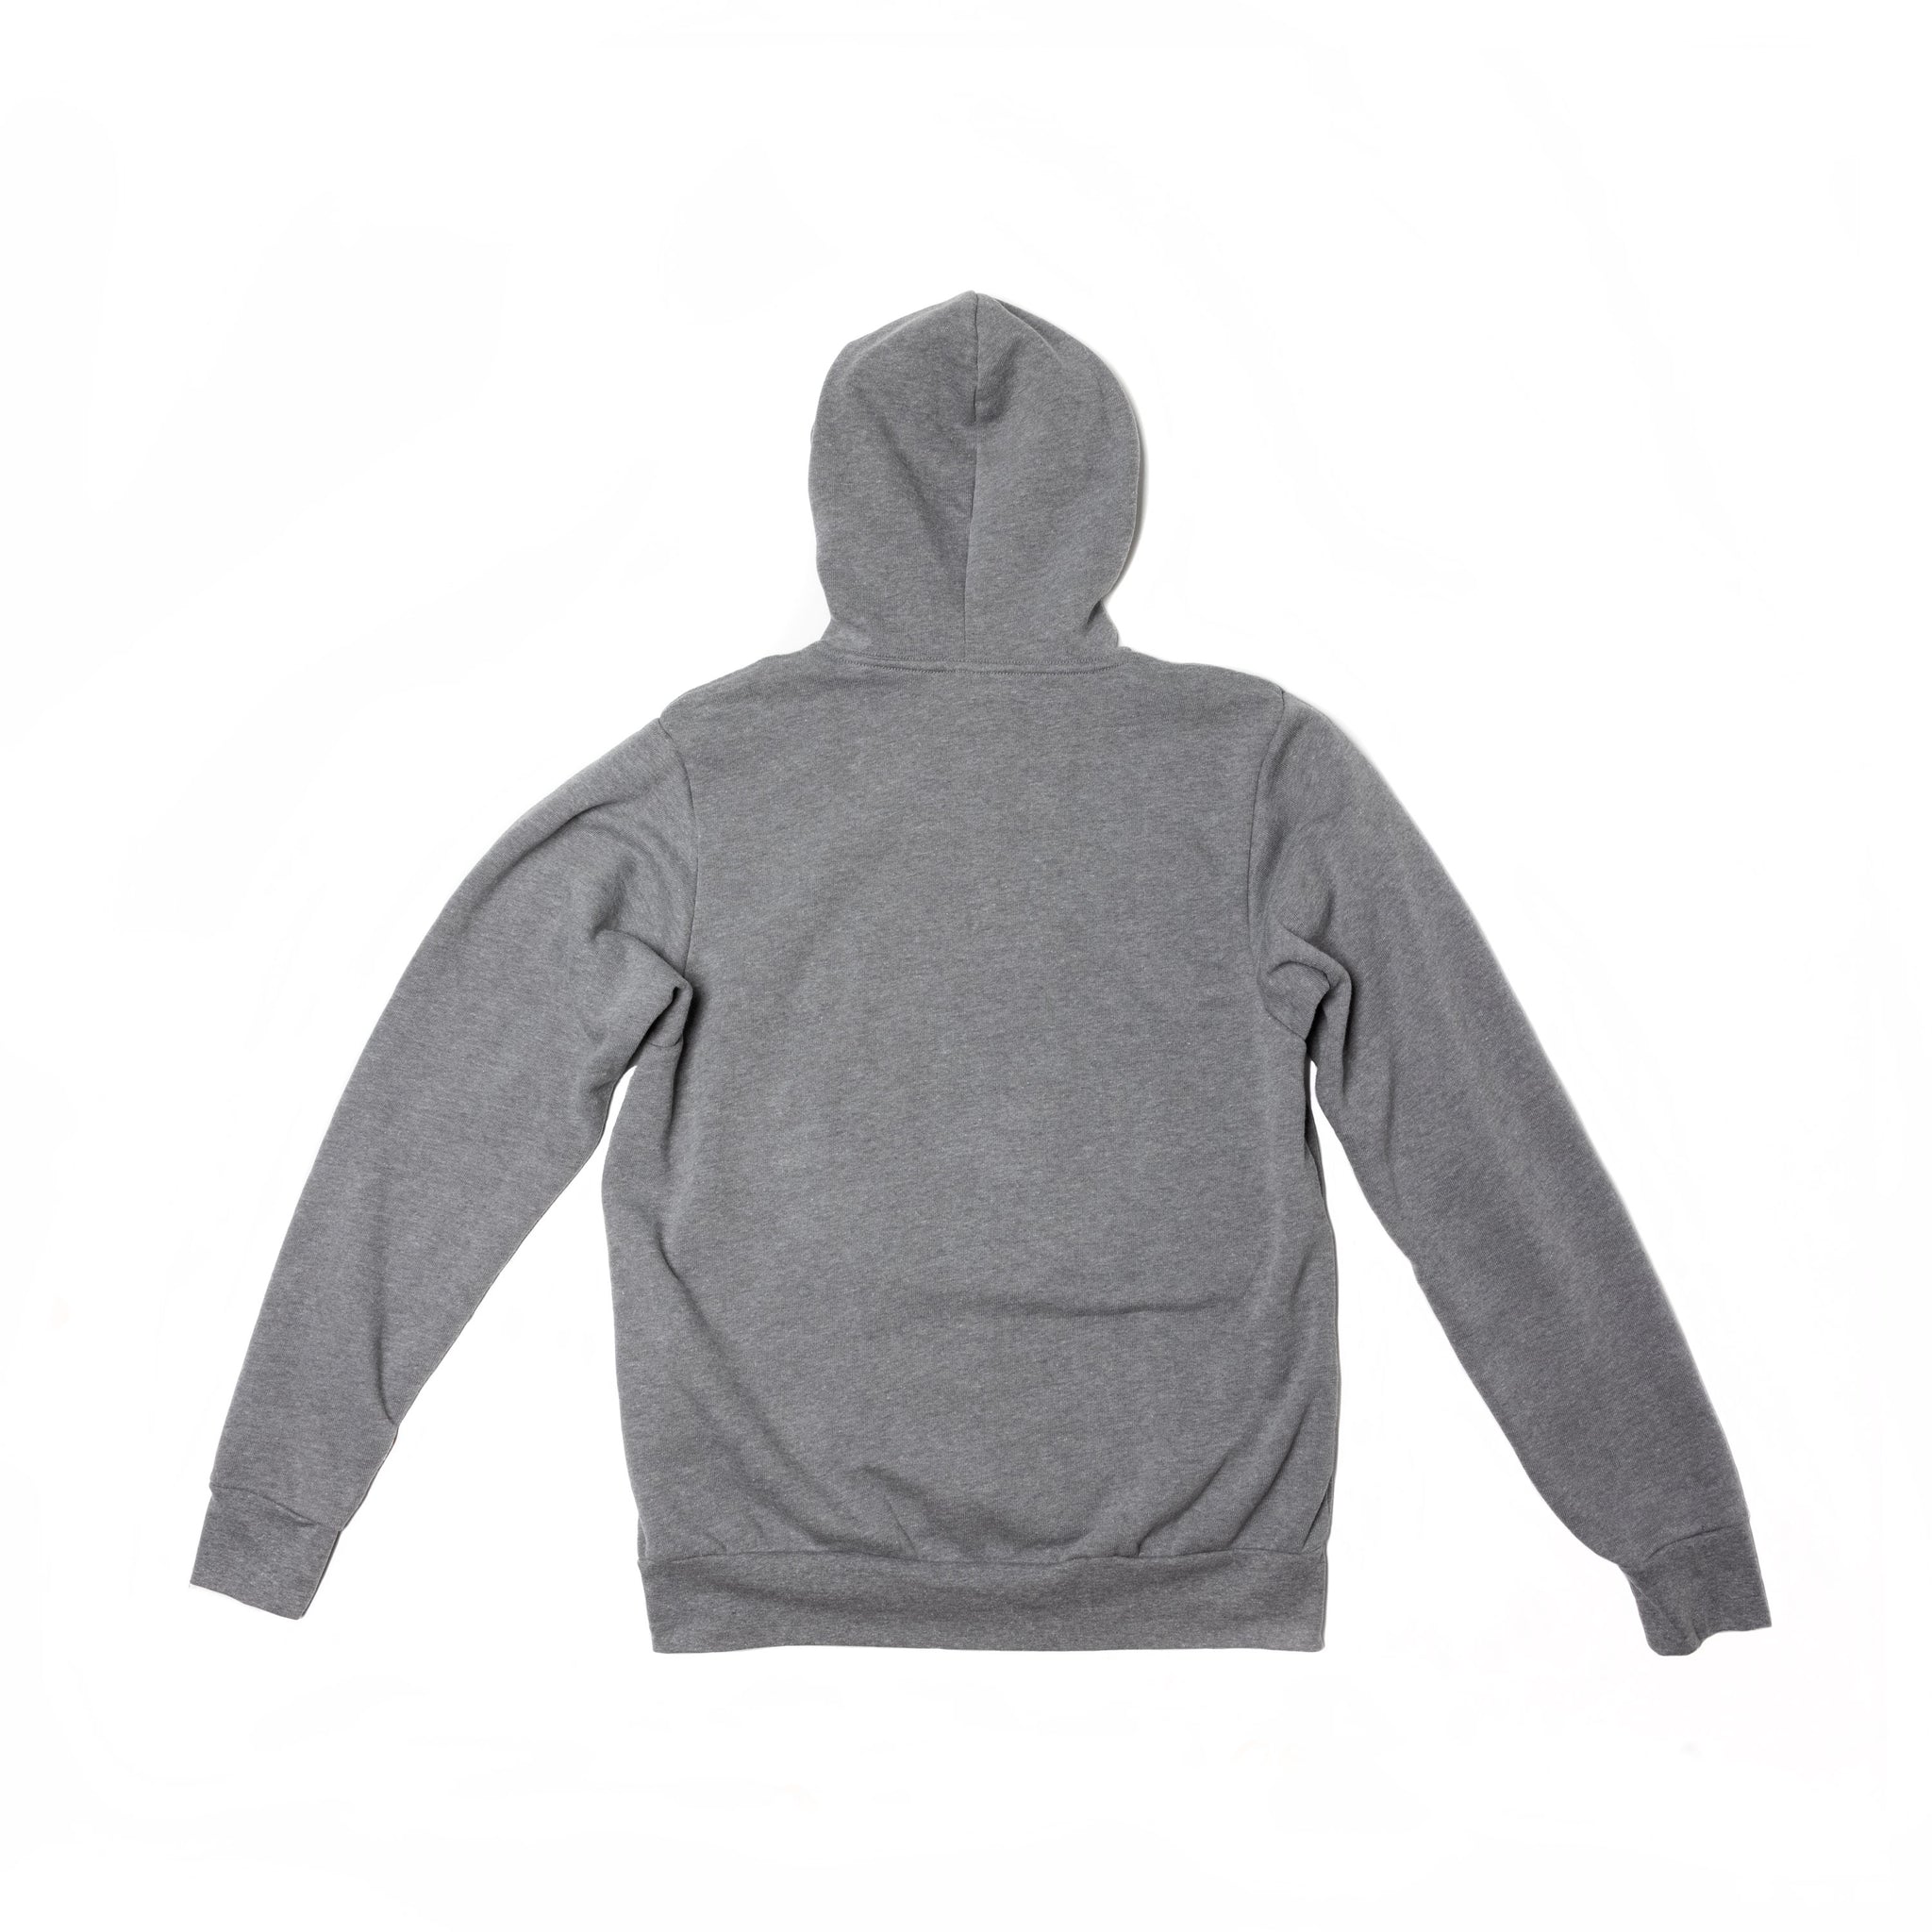 Back of light gray hooded sweatshirt